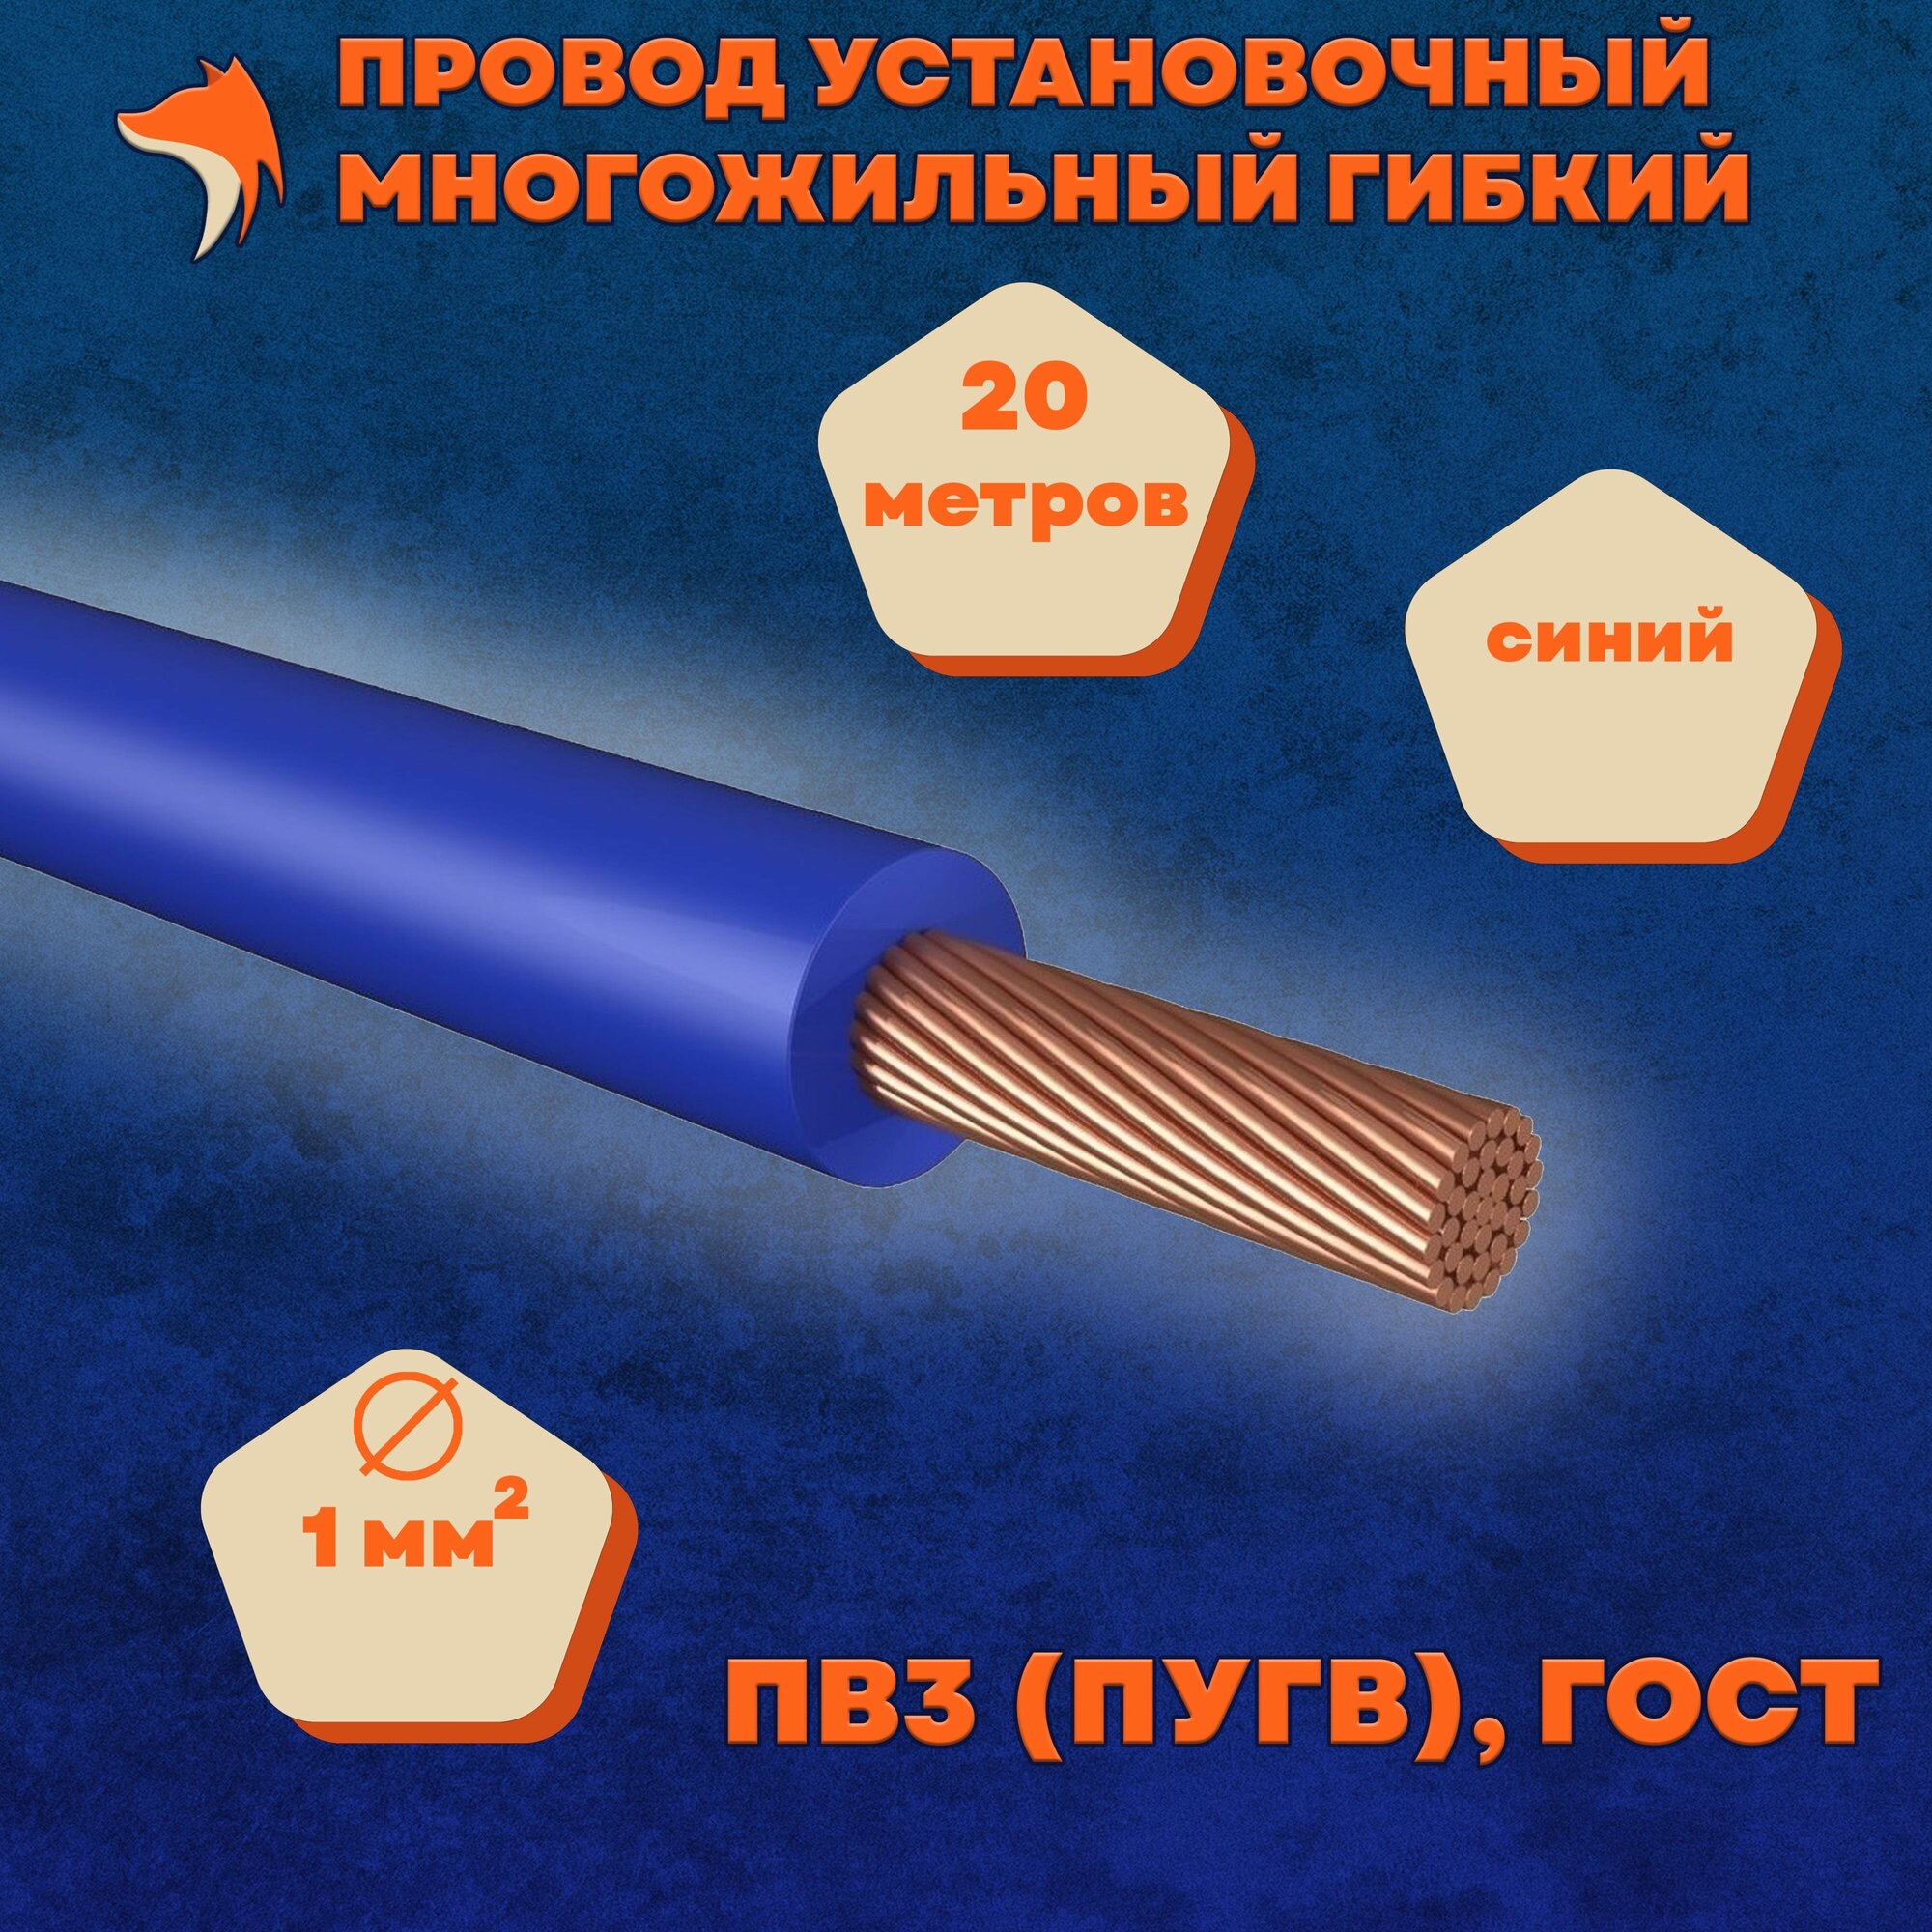 Провод установочный многожильный гибкий ПВ3 (ПуГВ) 1 мм , синий, 20 метров - фотография № 1